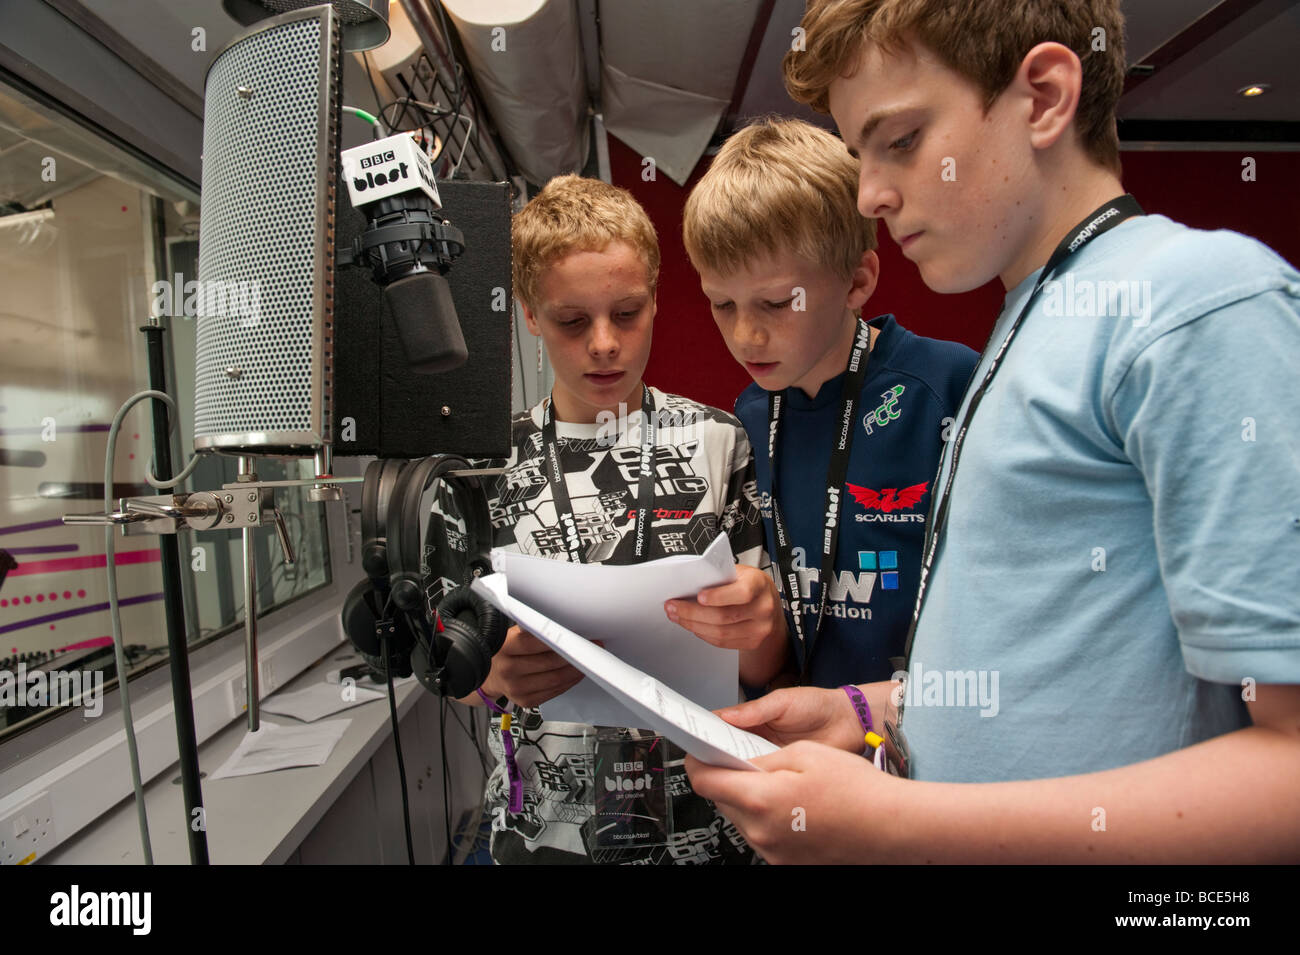 Drei Jungs im Teenageralter halten Skripte, die Aufnahme einer Radiosendung auf BBC Blast Roadshow, UK Stockfoto